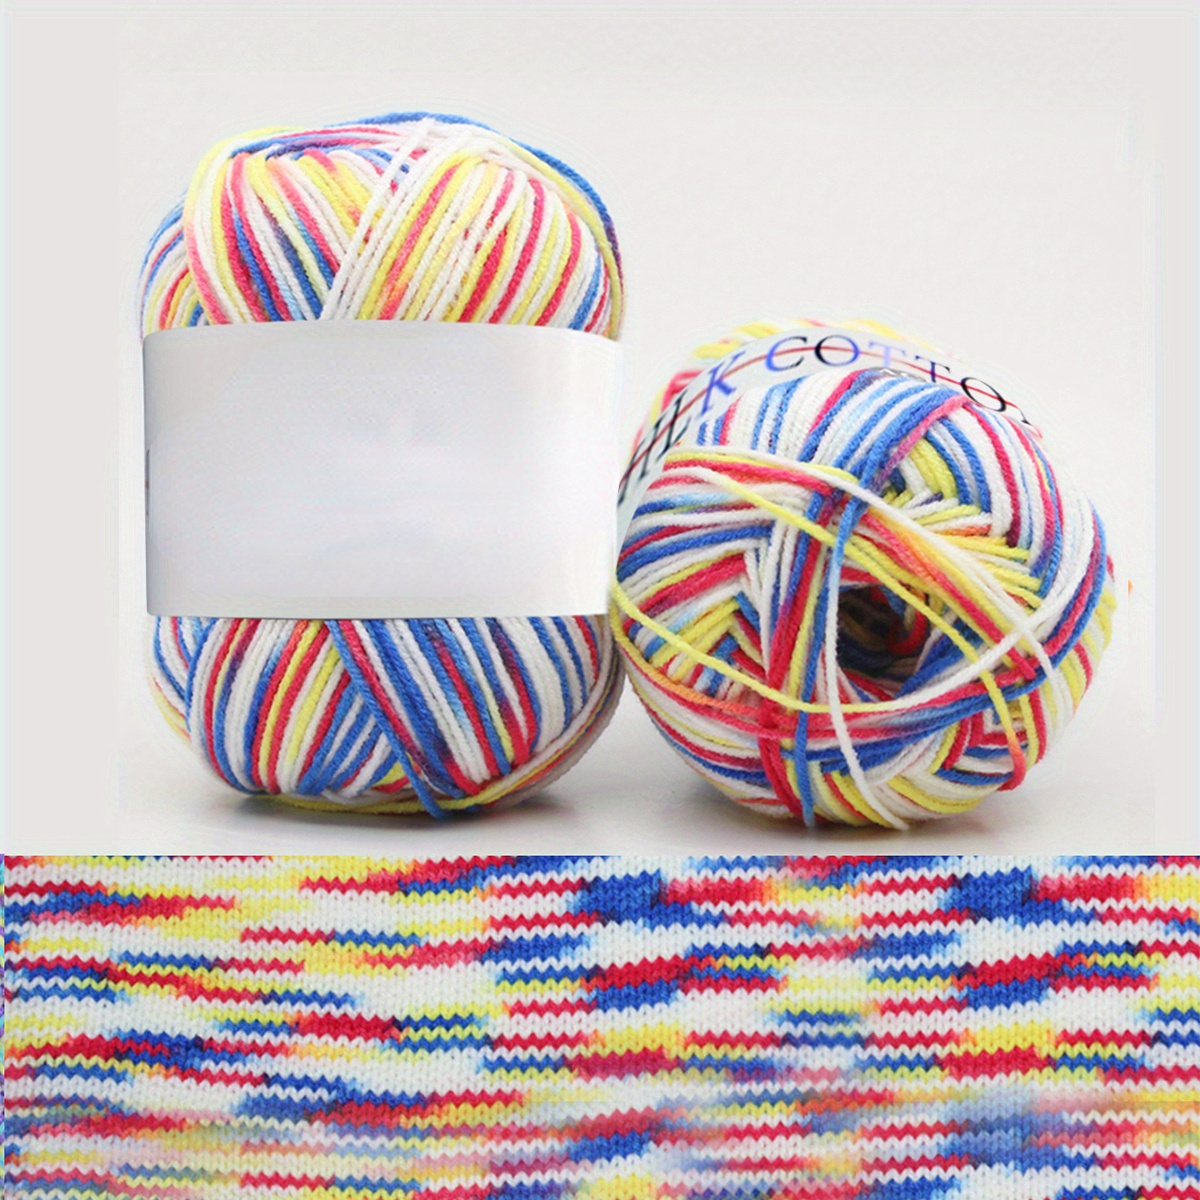 2 Bundles Rainbow Knitting Yarn Soft Warm Crochet Yarn 100% Wool Yarn  Multicolored Gradient Wool Yar…See more 2 Bundles Rainbow Knitting Yarn  Soft